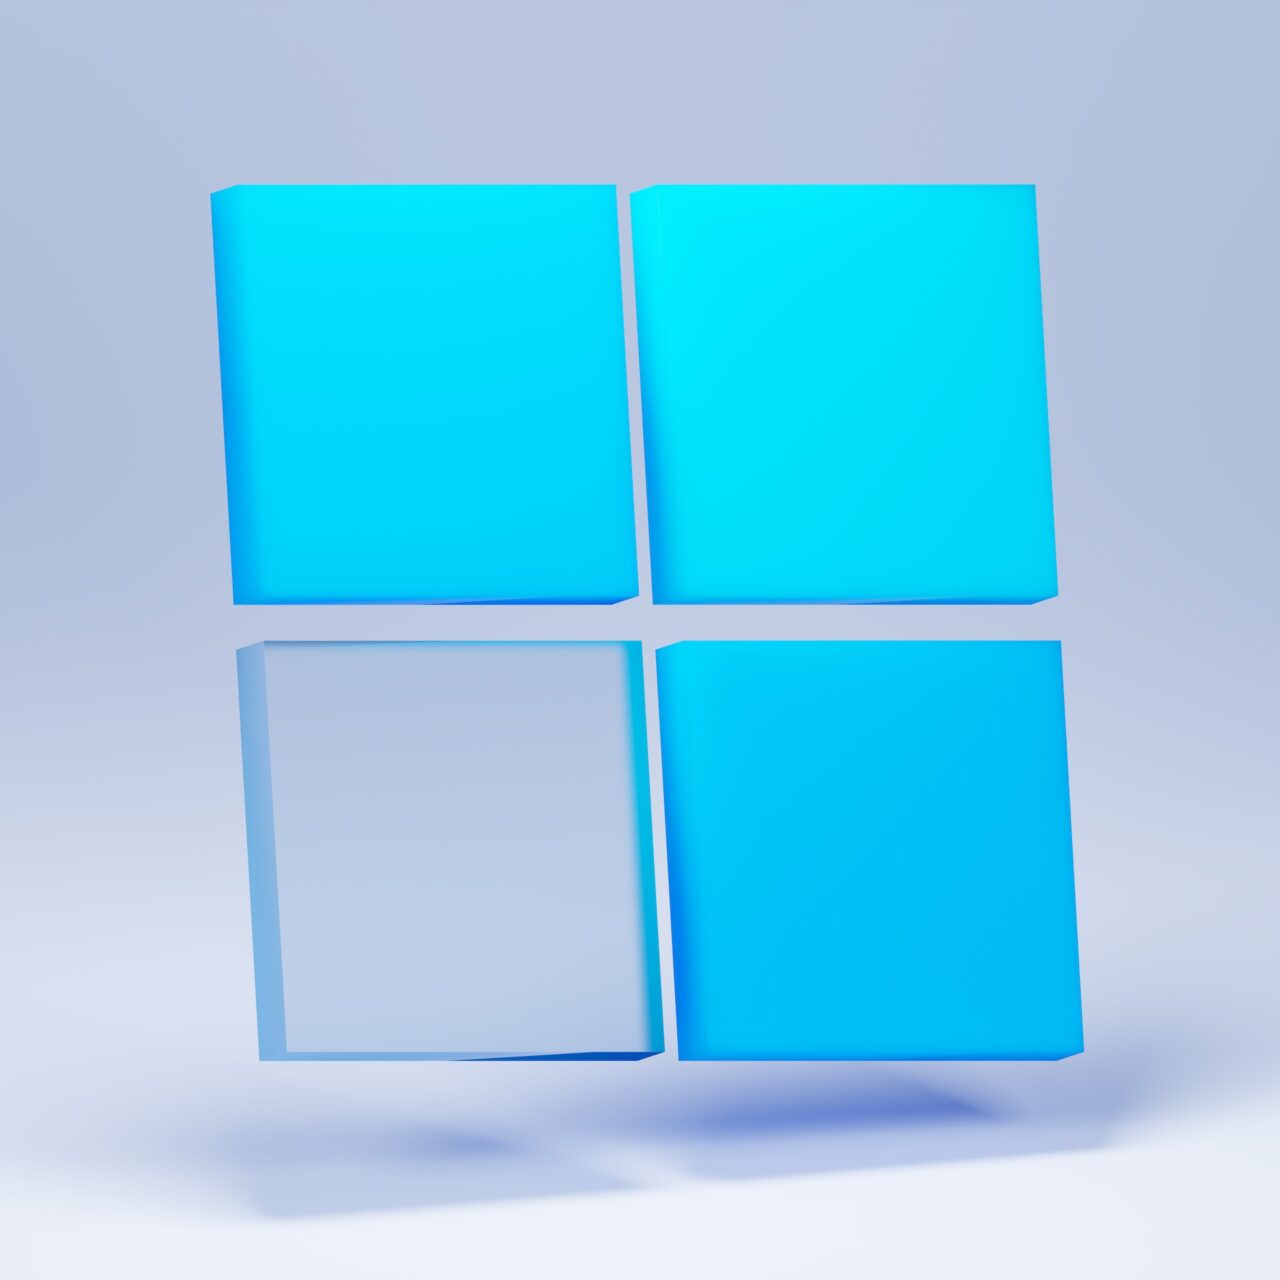 Jak zmniejszyć pasek zadań w Windows 11